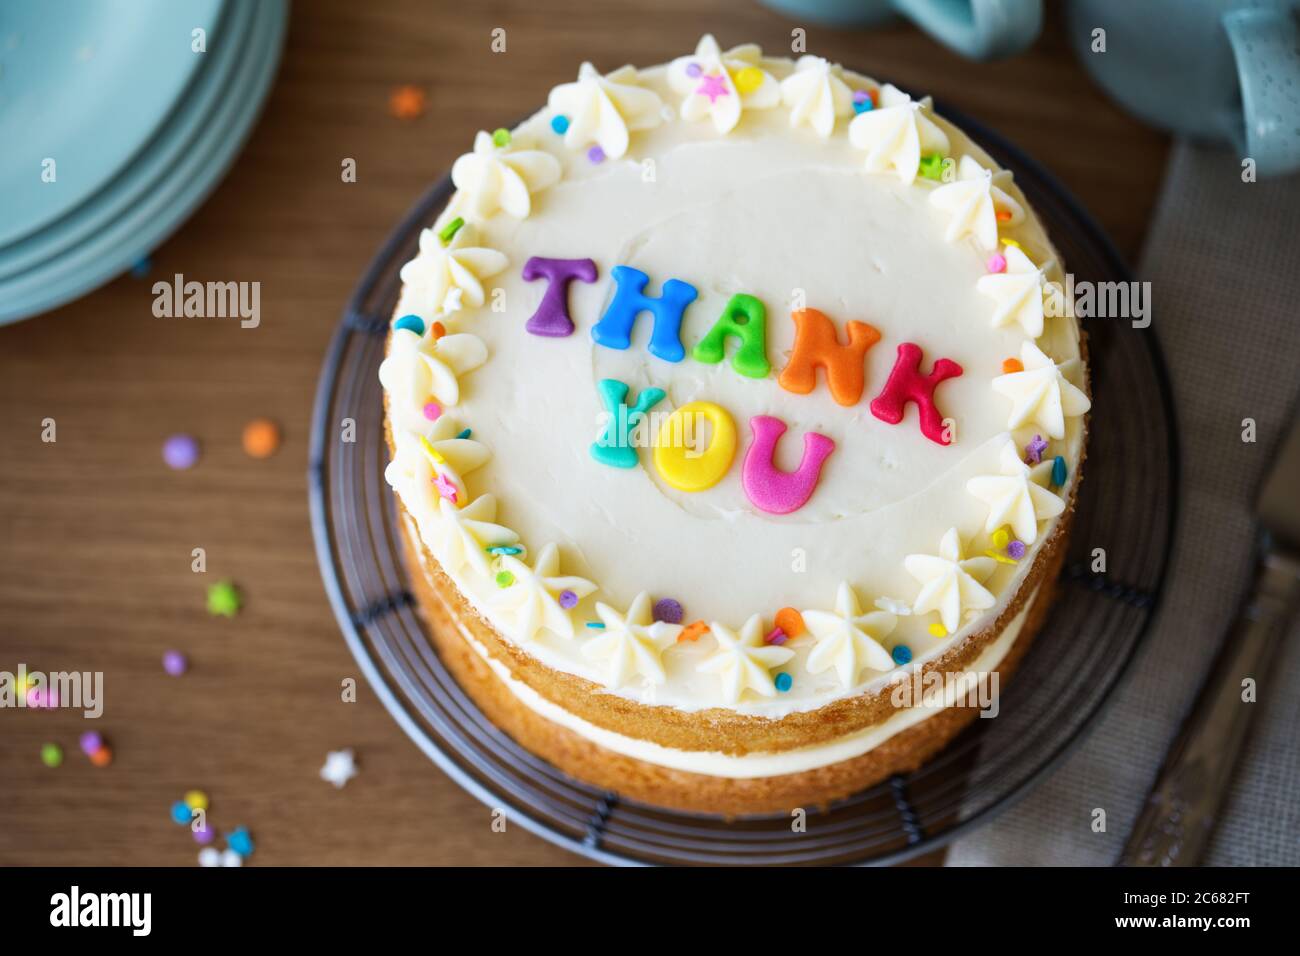 Gâteau avec des lettres arc-en-ciel colorées orthographiant merci Banque D'Images